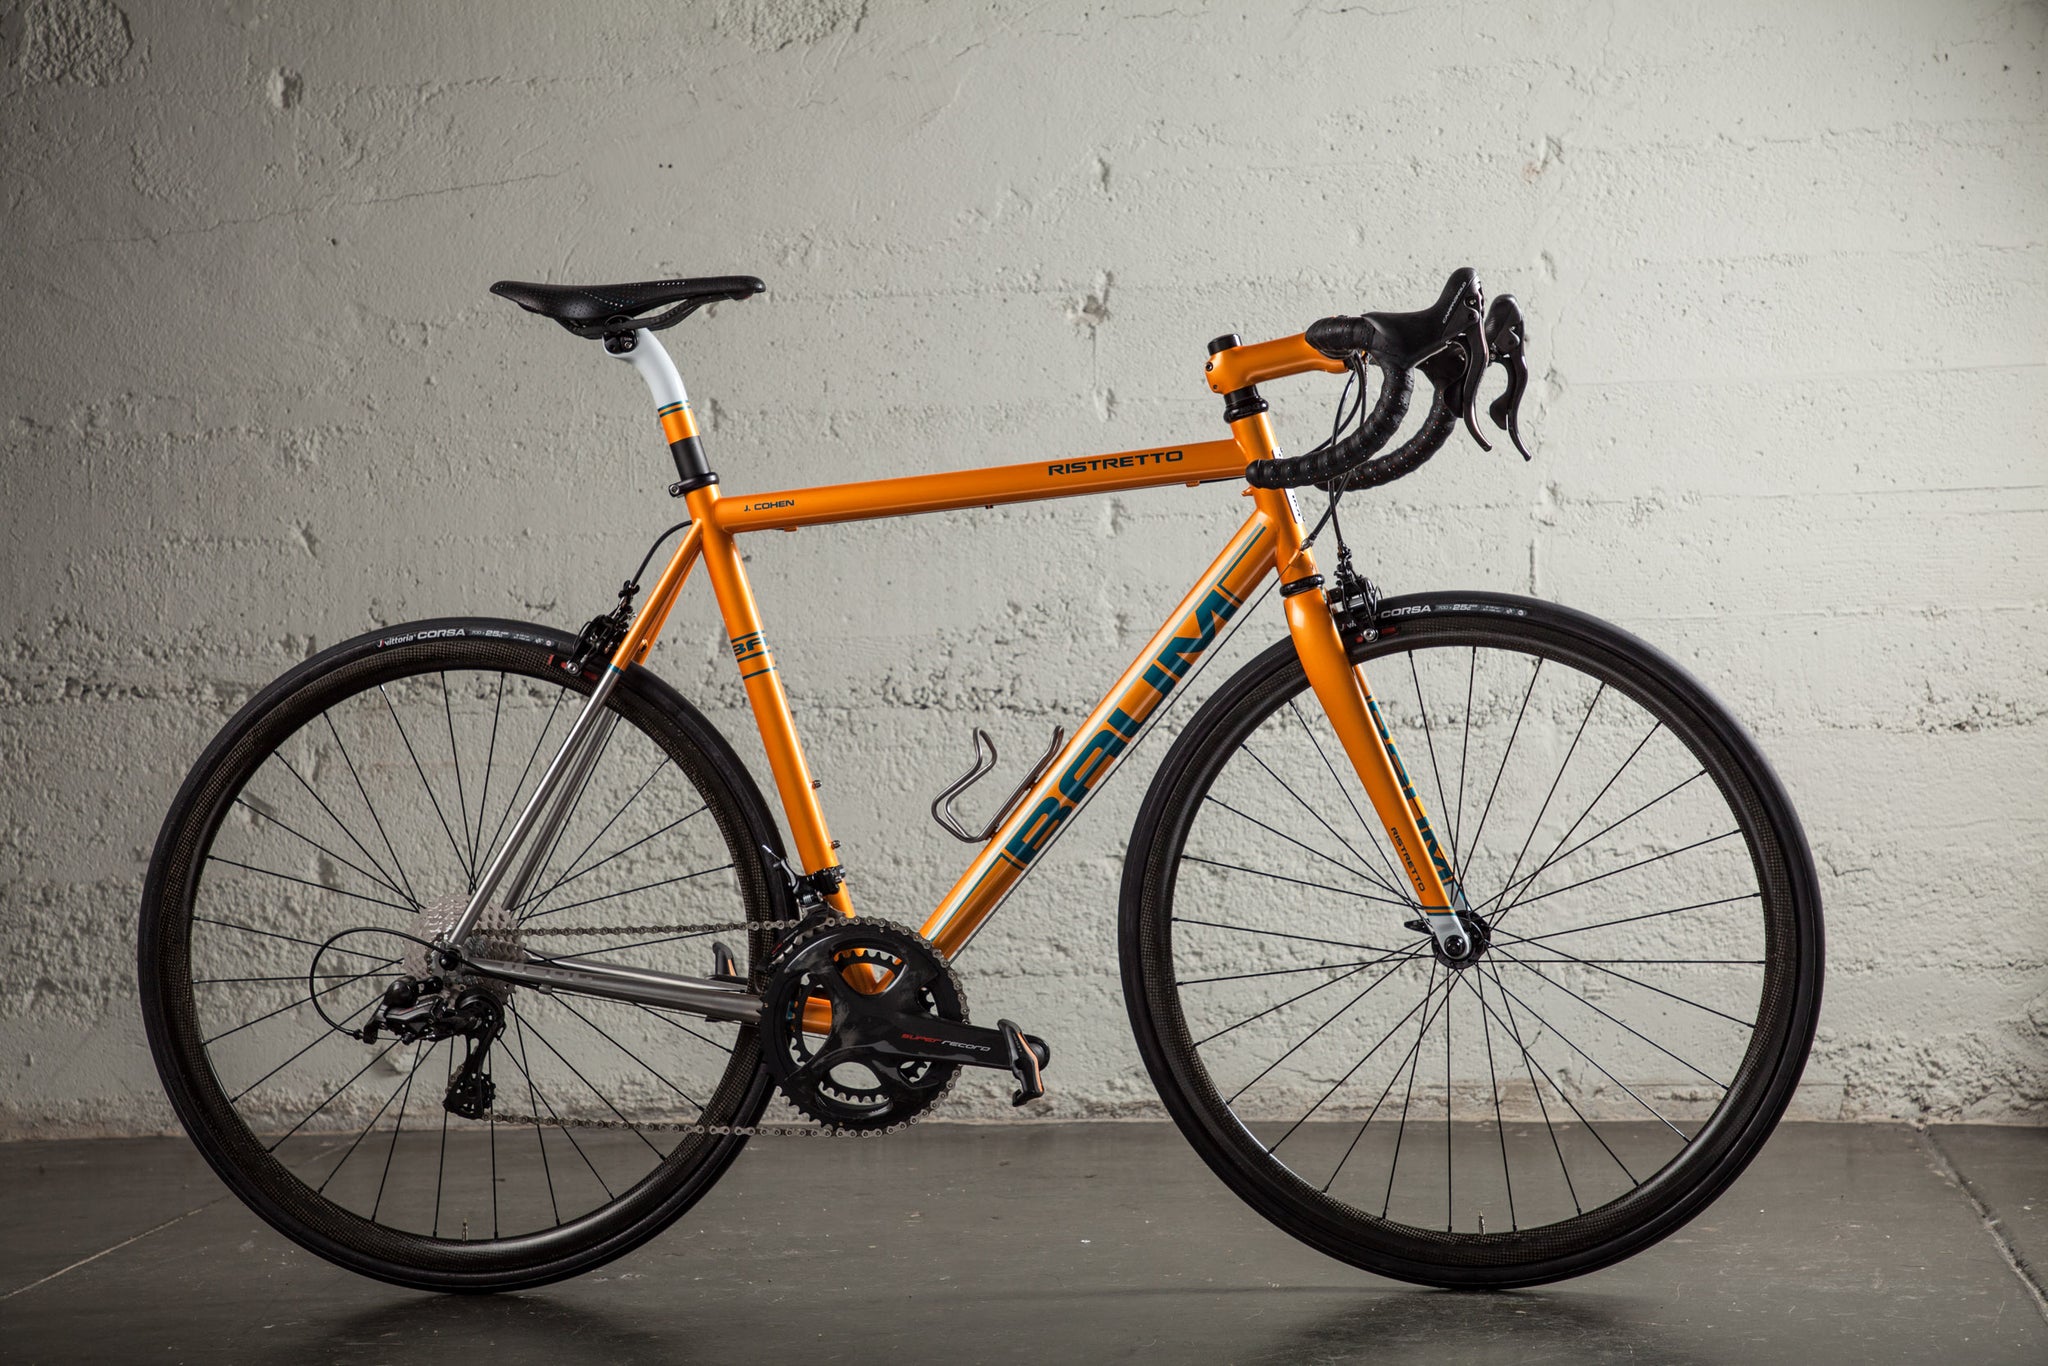 baum ristretto orange super record JC bike profile